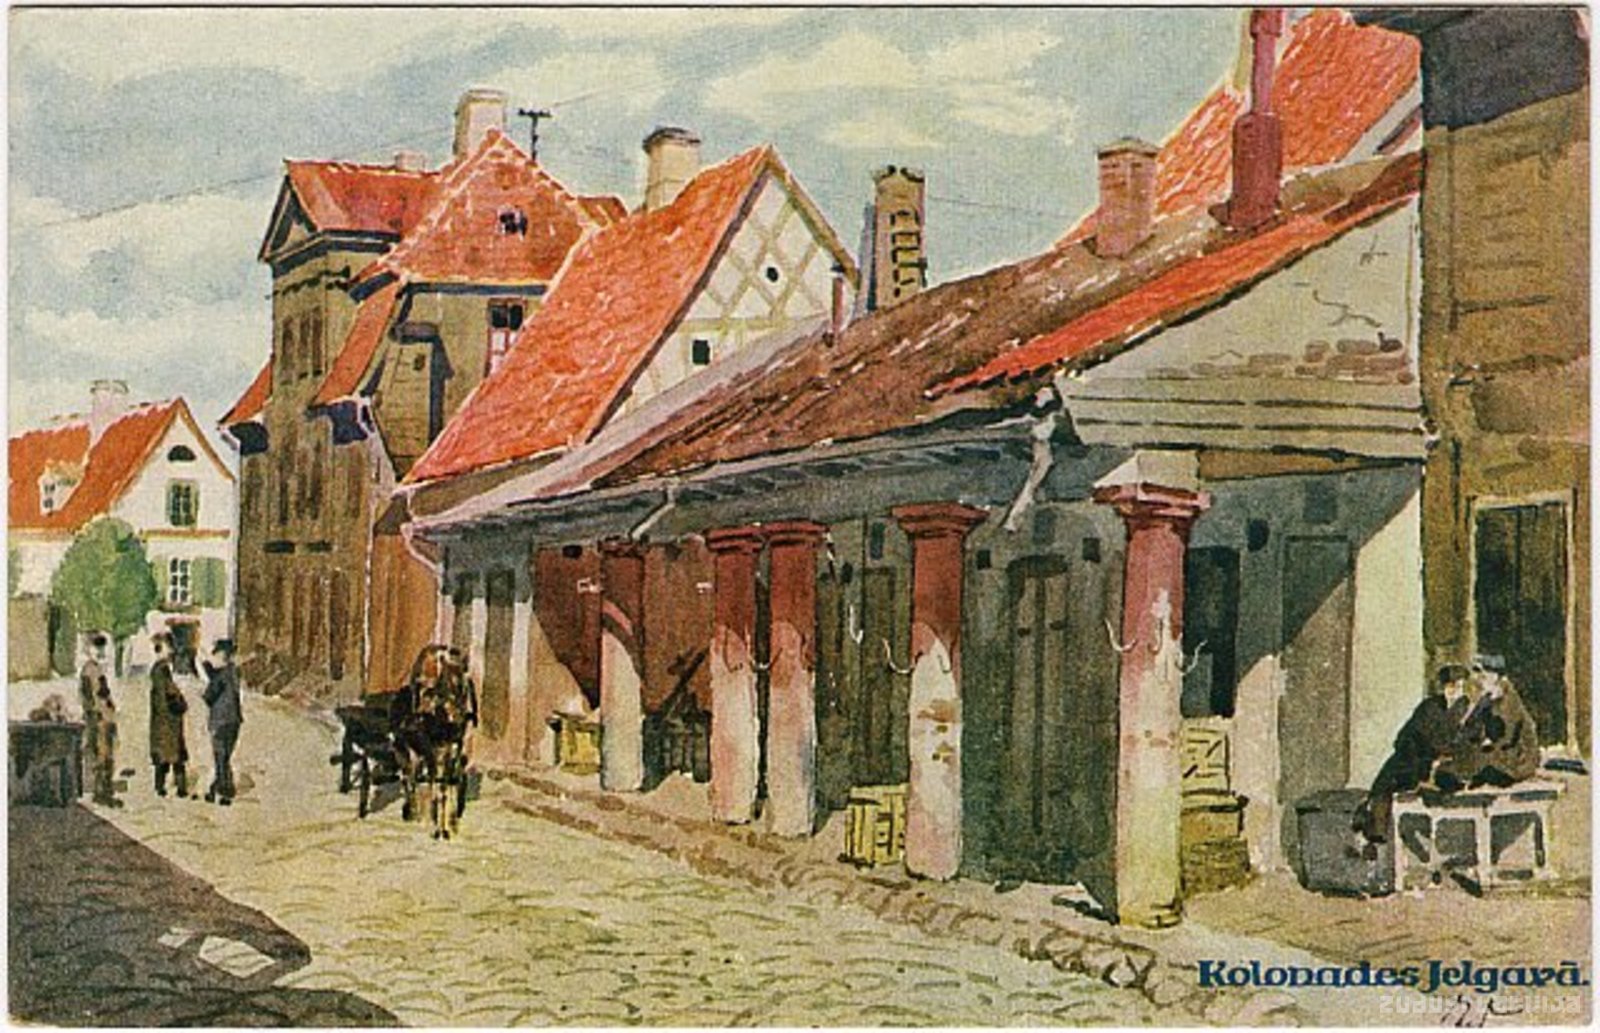 Colonnades in Mitava, Colonnades in Mitau, Colonnades in Jelgava, Les Colonnades à Jelgava